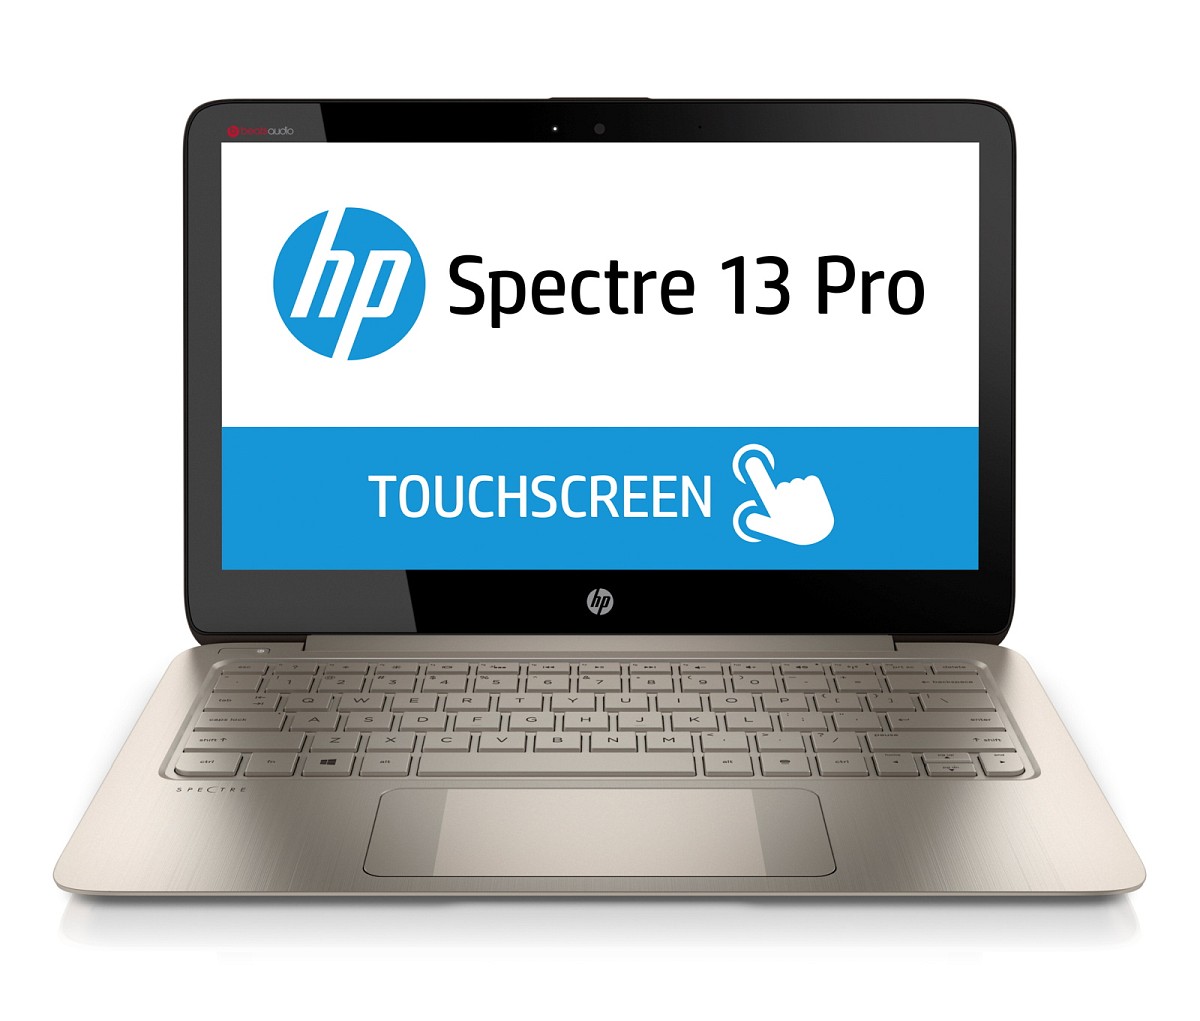 HP Spectre 13 Pro (F1N42EA)